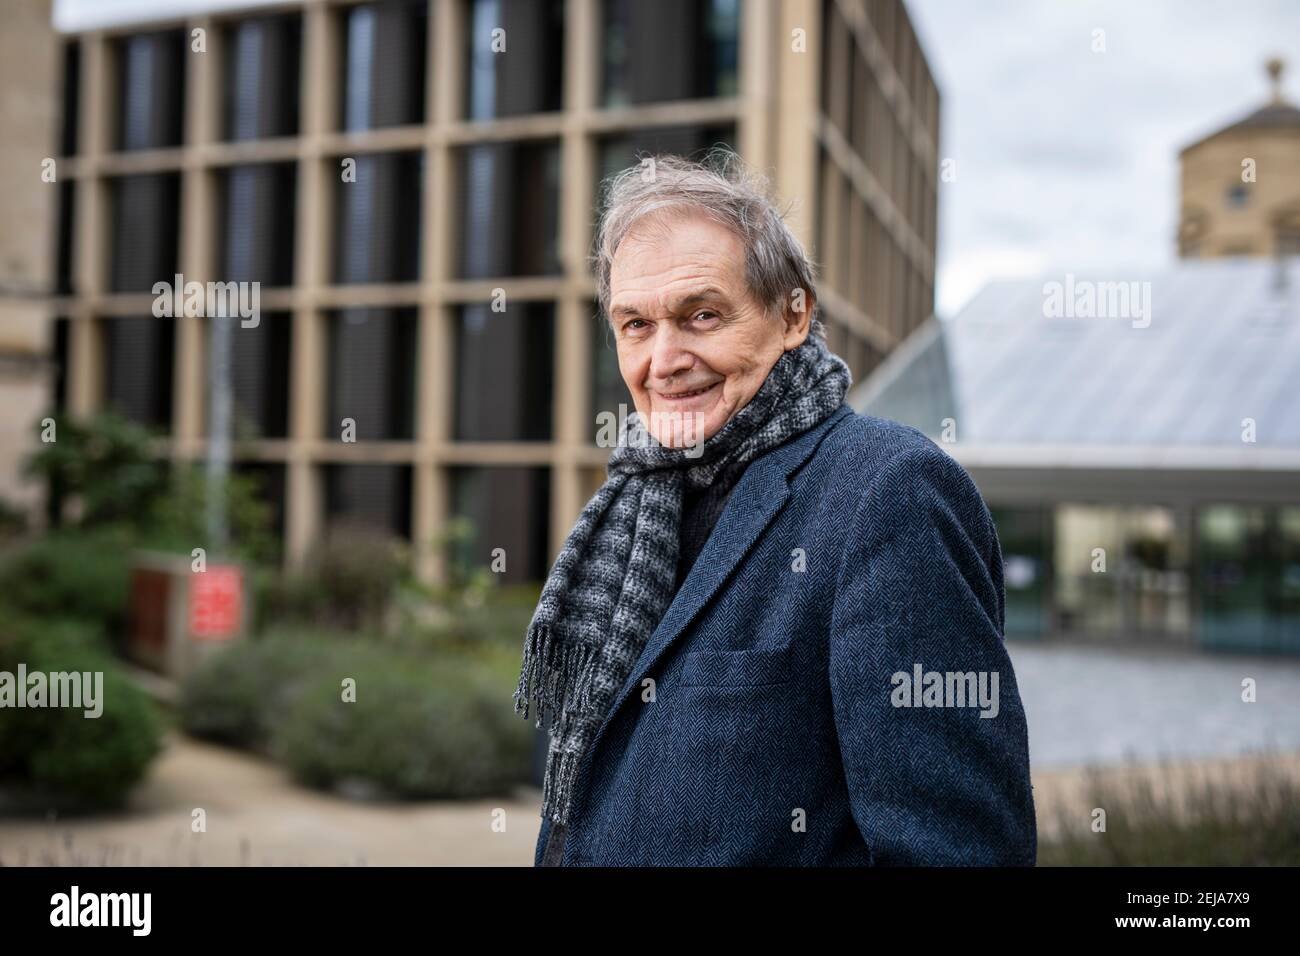 Sir Roger Penrose, Professore emerito presso l'Istituto Matematico dell'Università di Oxford. Gli è stato conferito il Premio Nobel per la fisica. Foto Stock